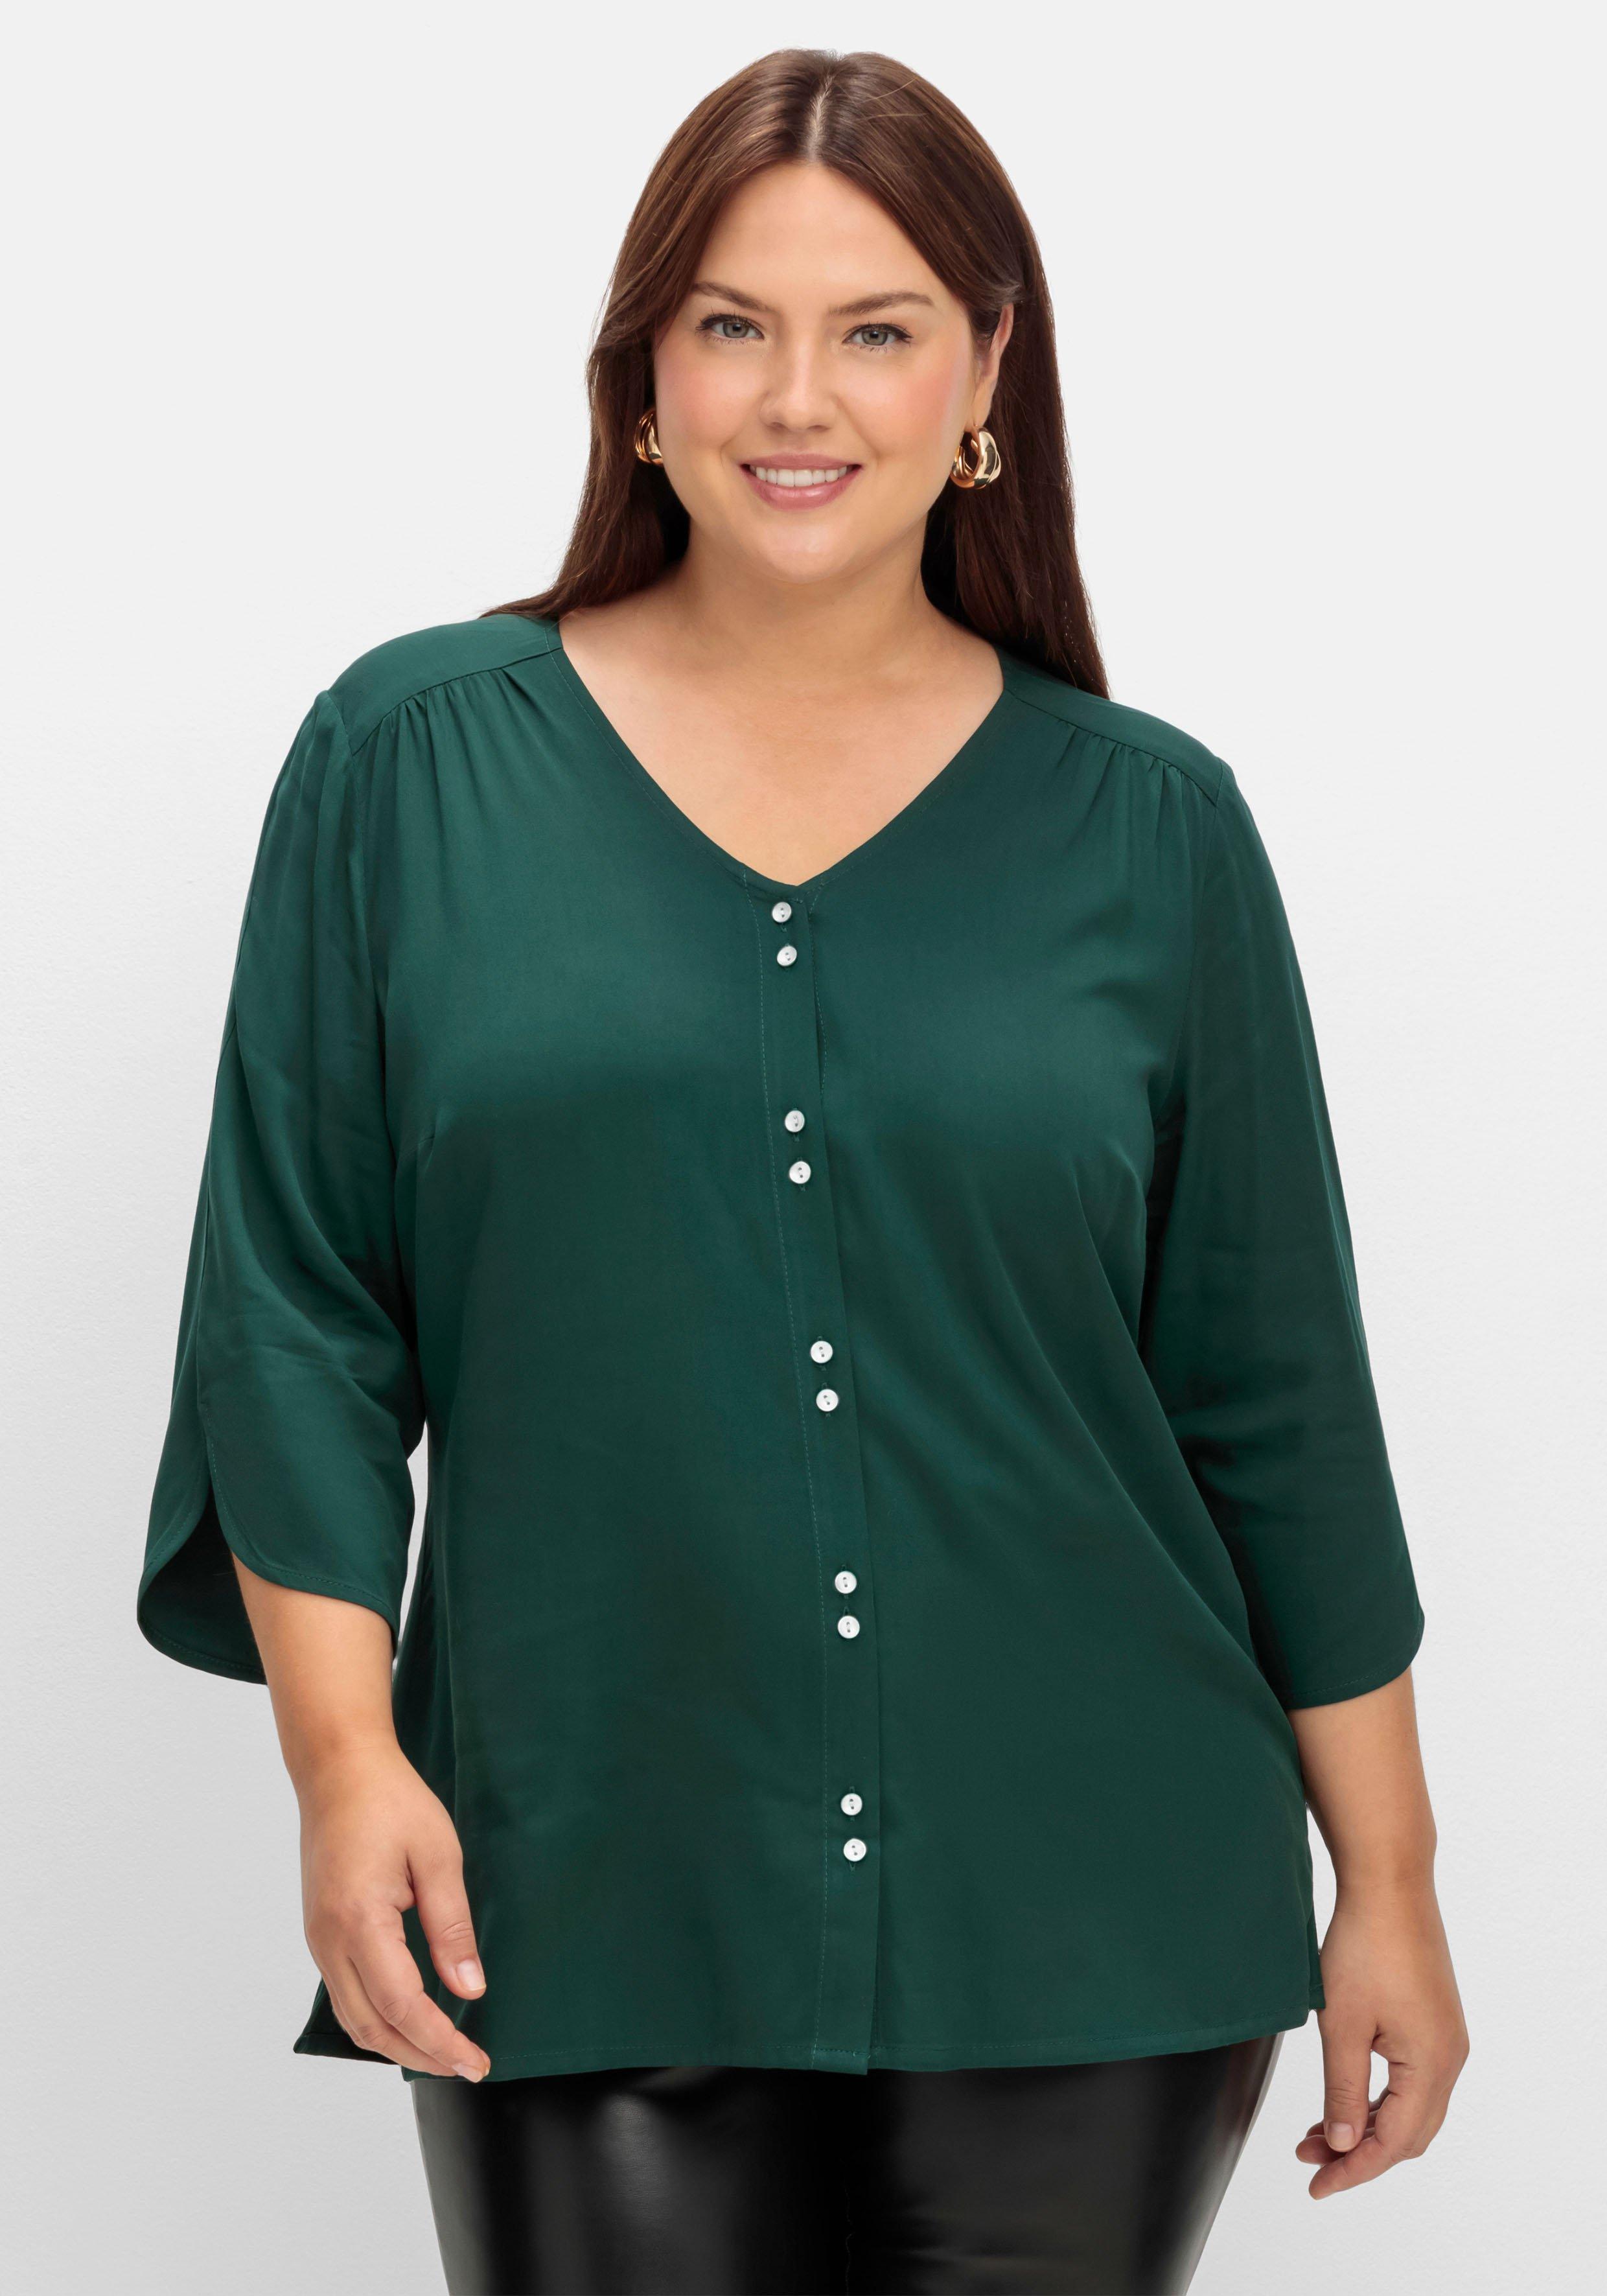 Blusen & Tuniken Mode | Size ♥ grün Plus Größen sheego große